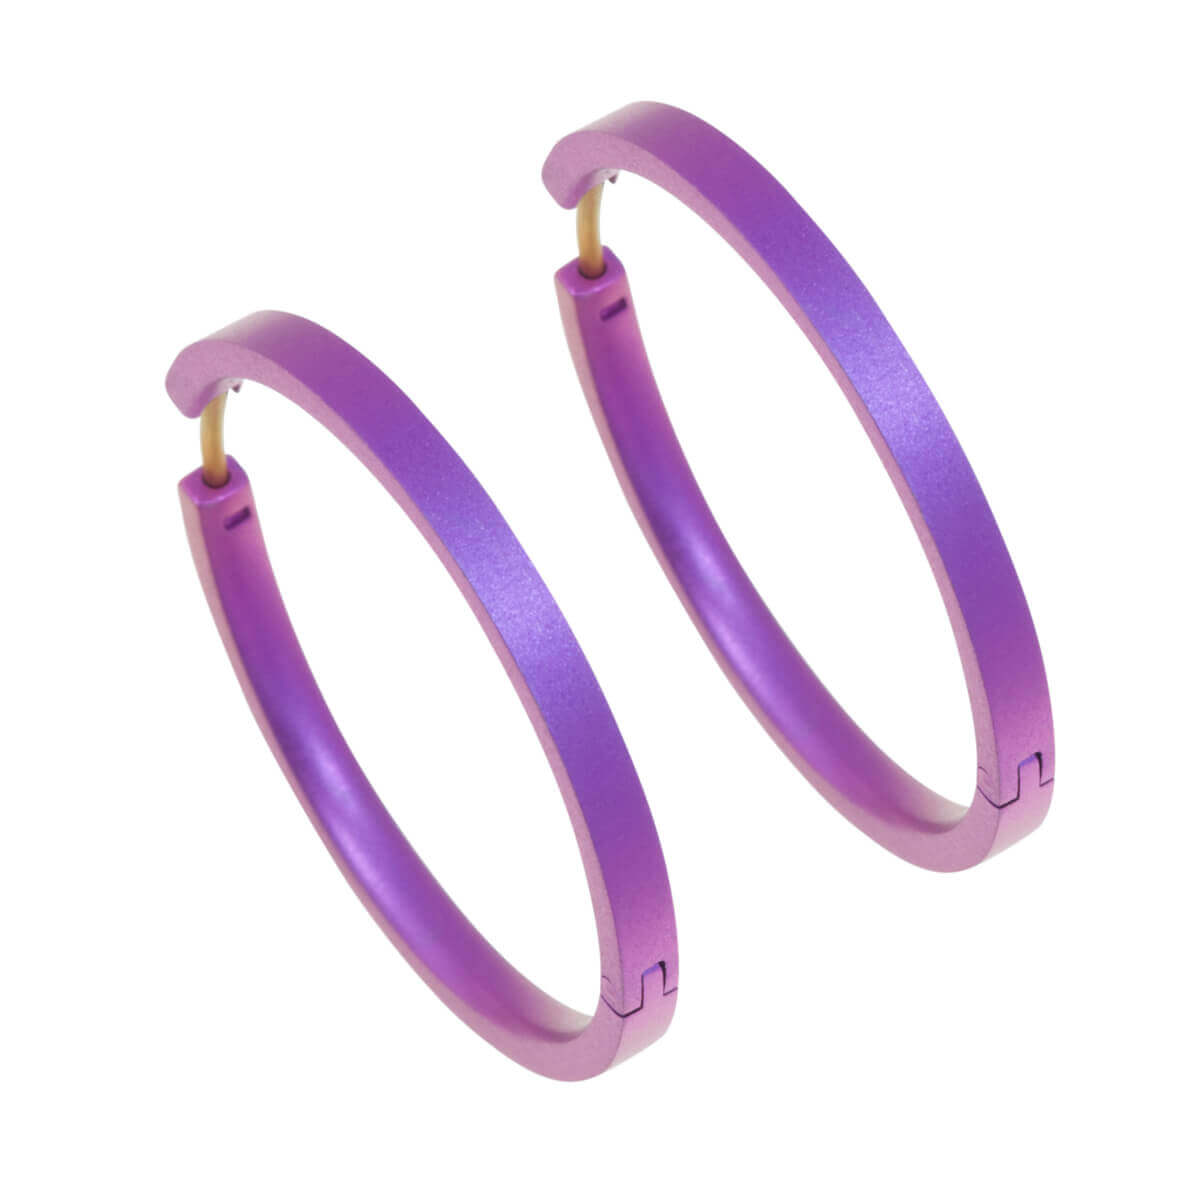 Titanium Large Hinged Hoop Earrings - Pink/Purple Tones